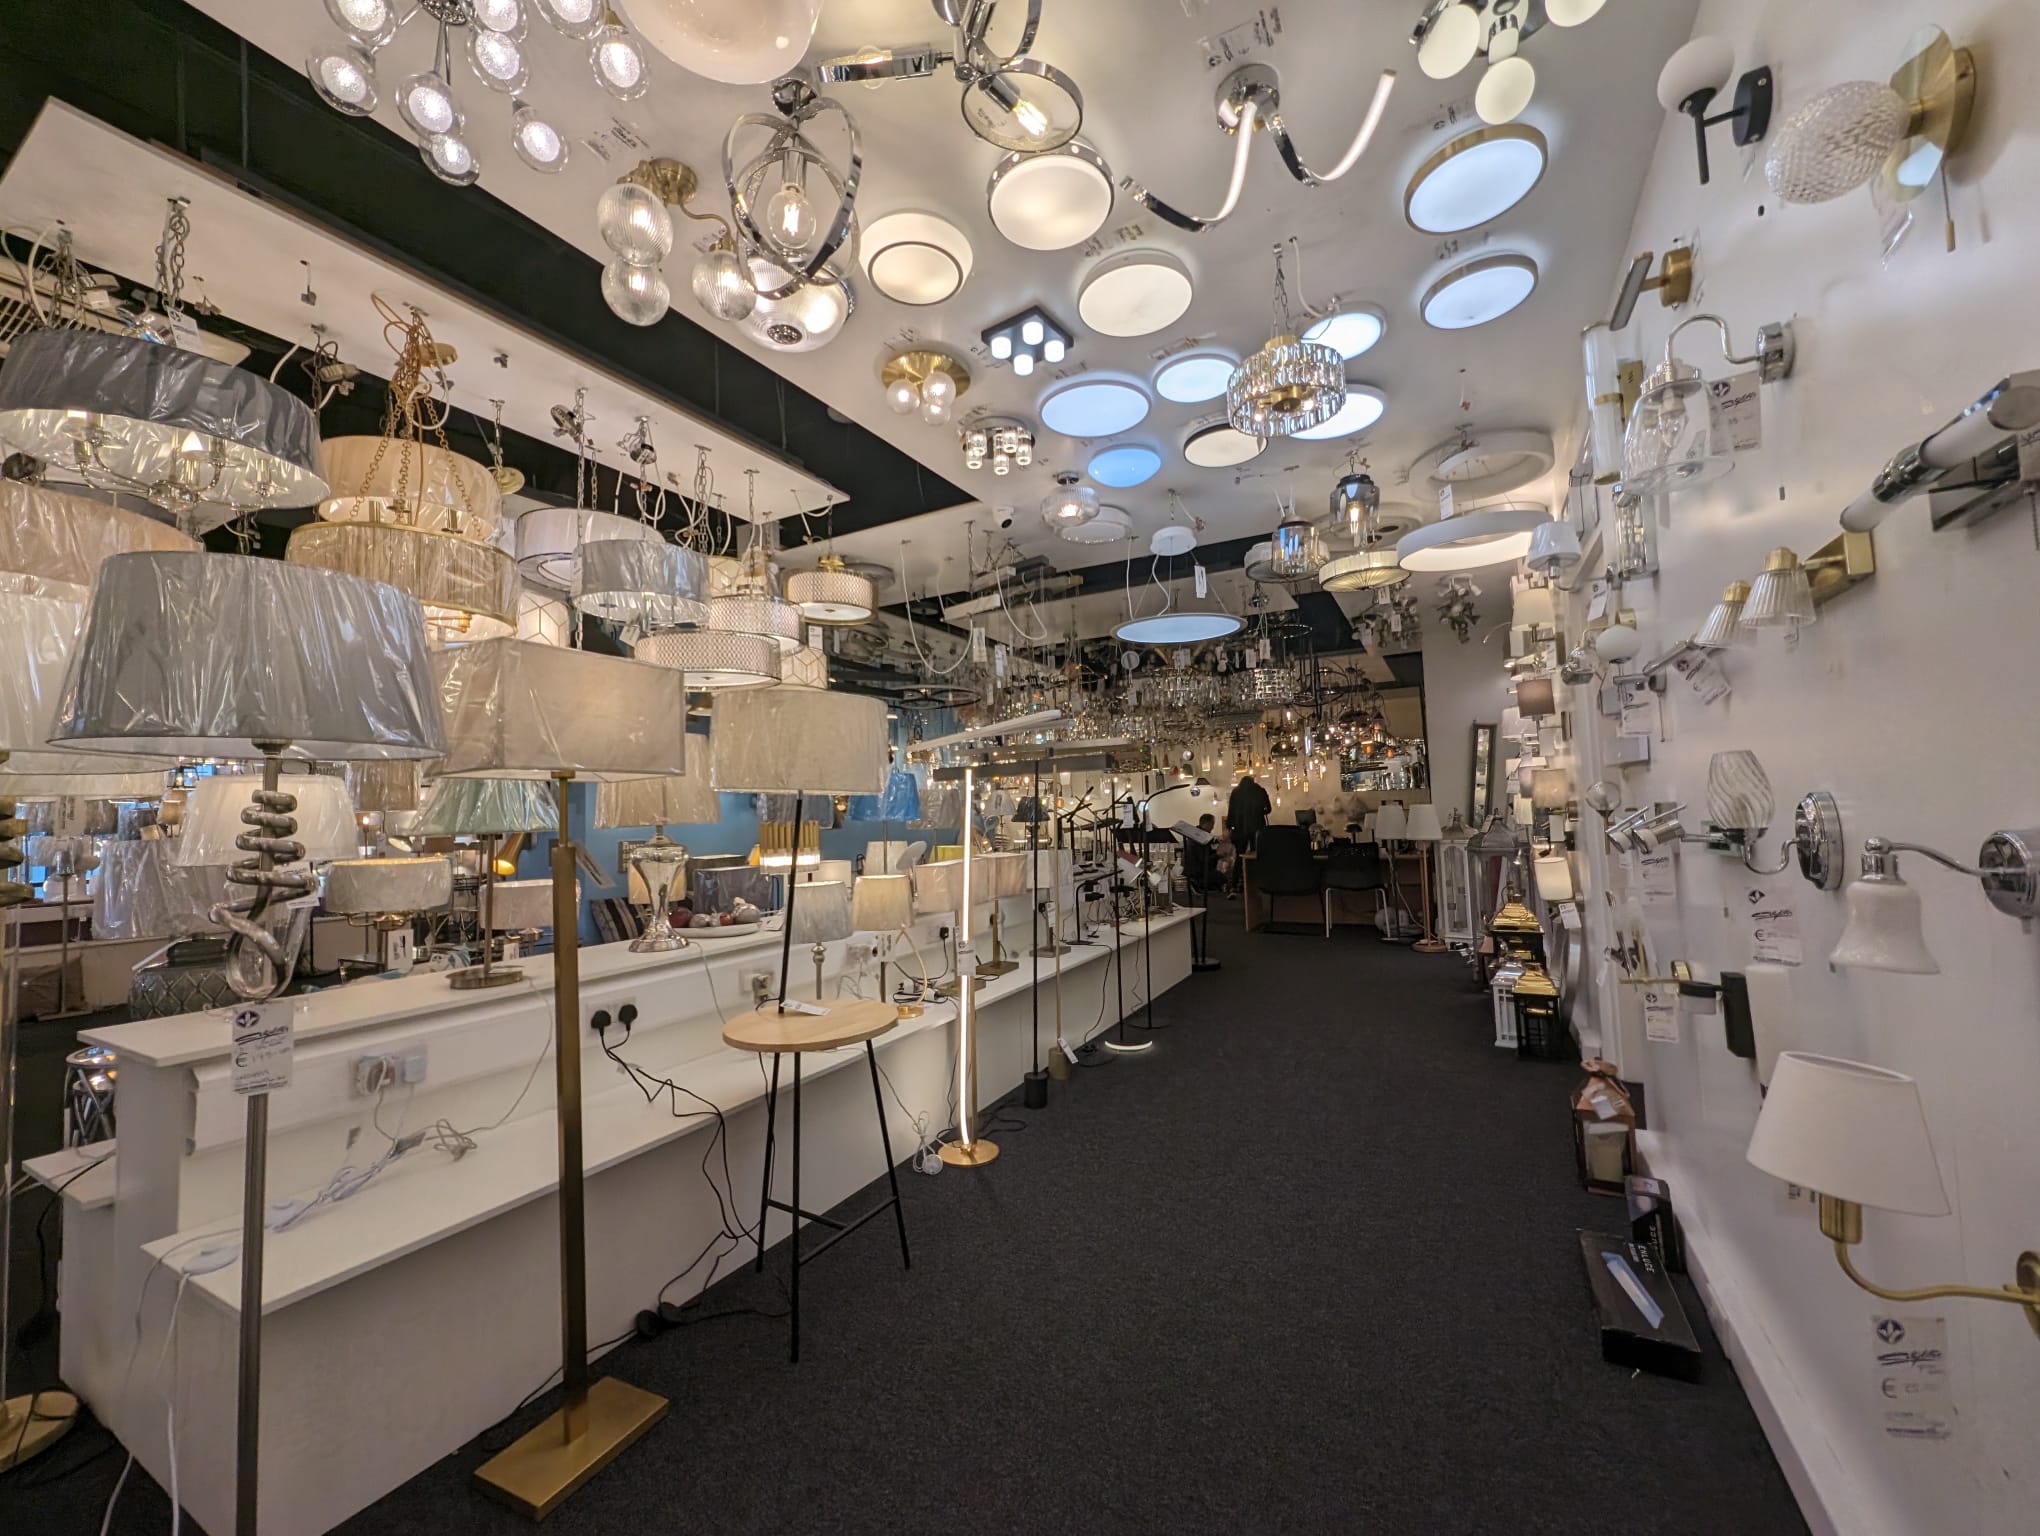 Peter Curran Electric's Citylites lighting showroom